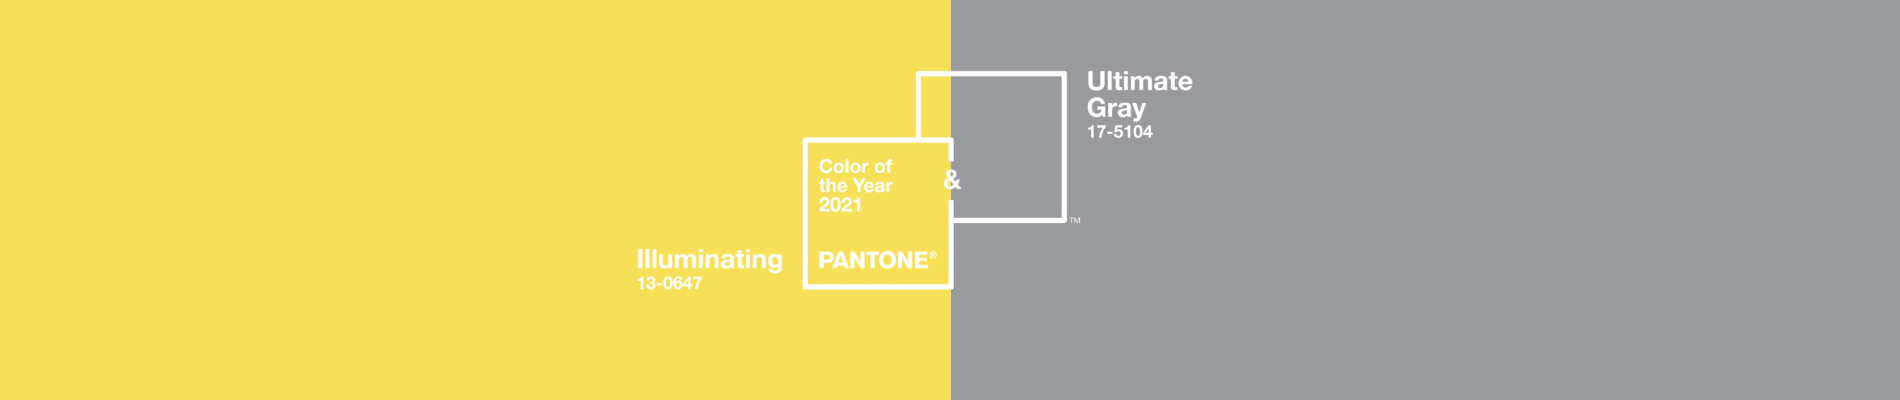 cover couleurs année 2021 : jaune illuminating et gris Ultimate Gray